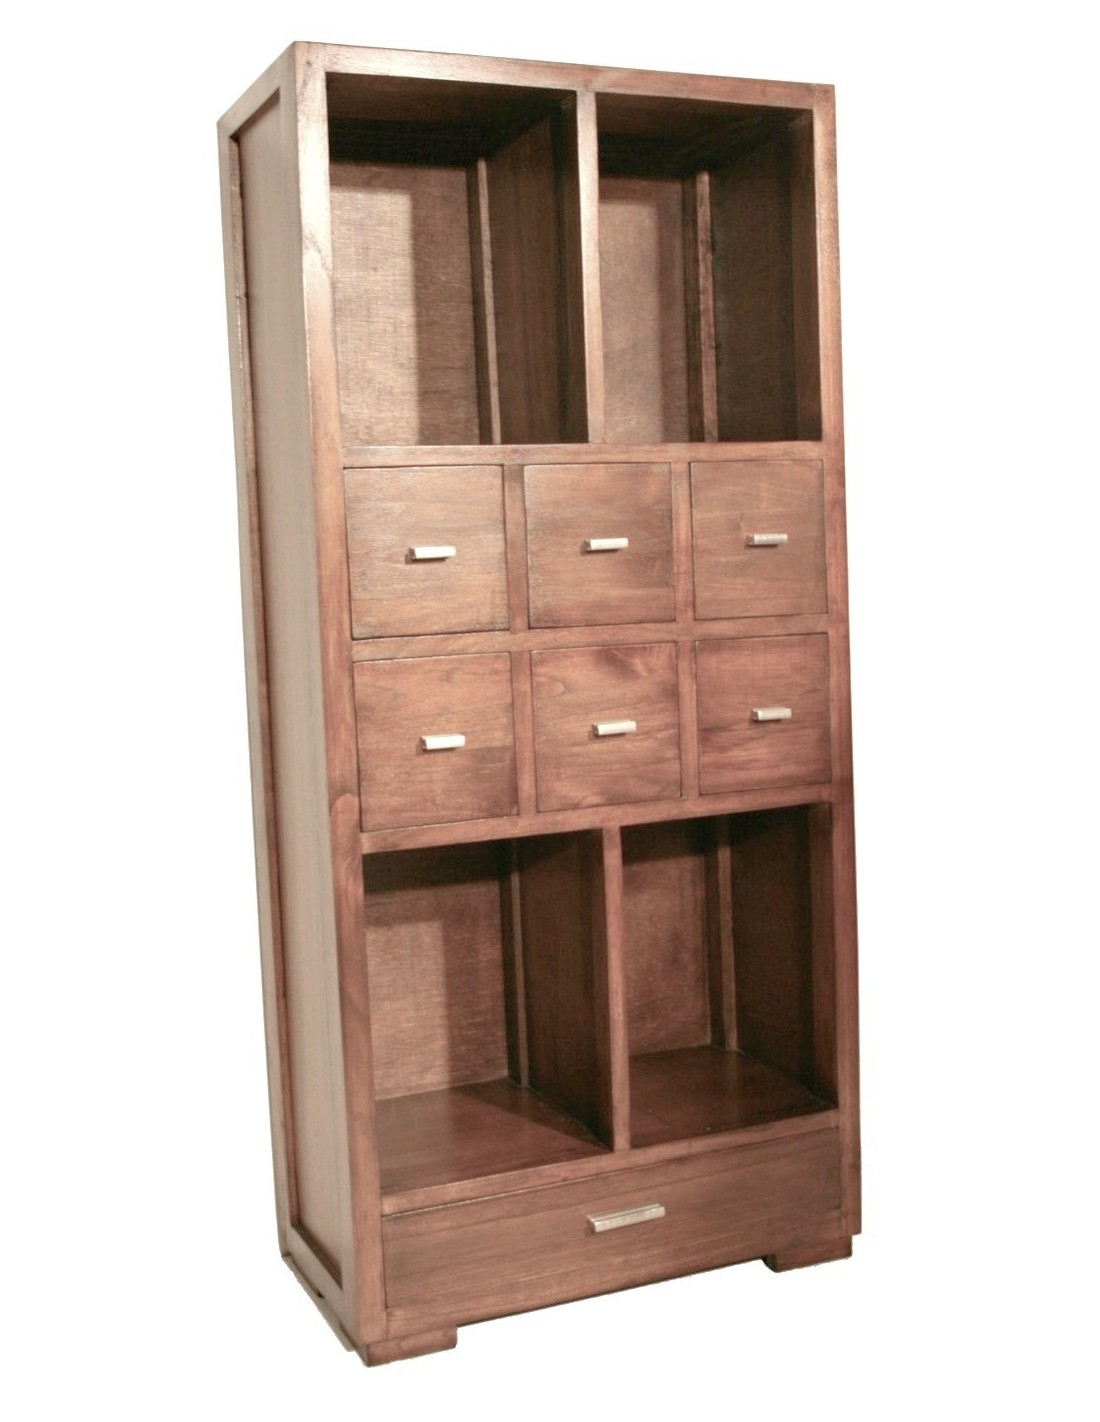 Librería estantería en madera de mindi con cajones. Medidas totales: 130x60x30 cm.